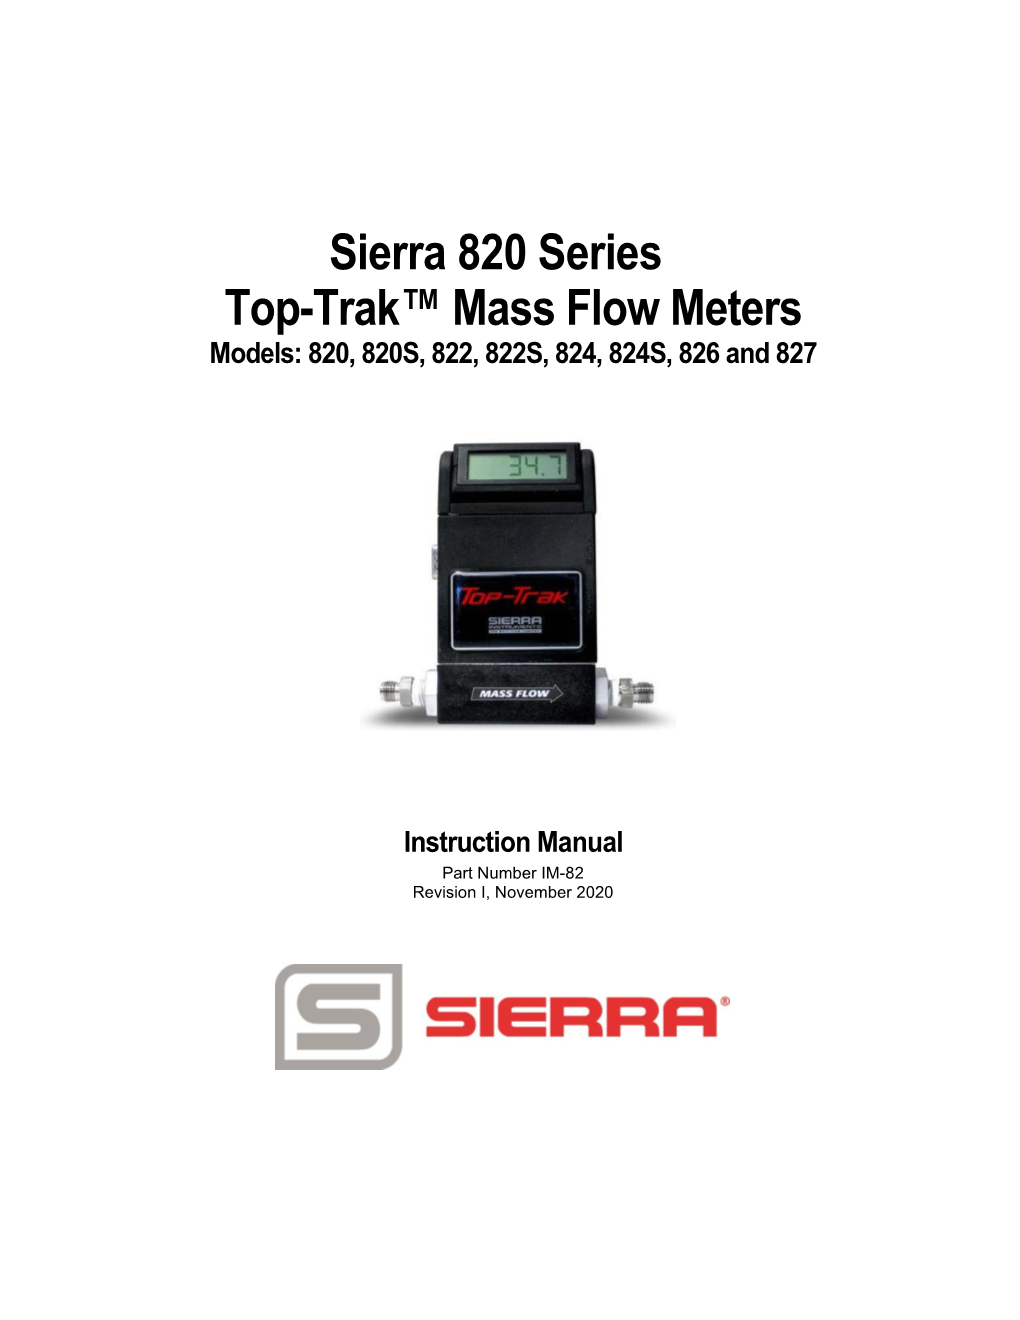 Sierra 820 Series Top-Trak™ Mass Flow Meters